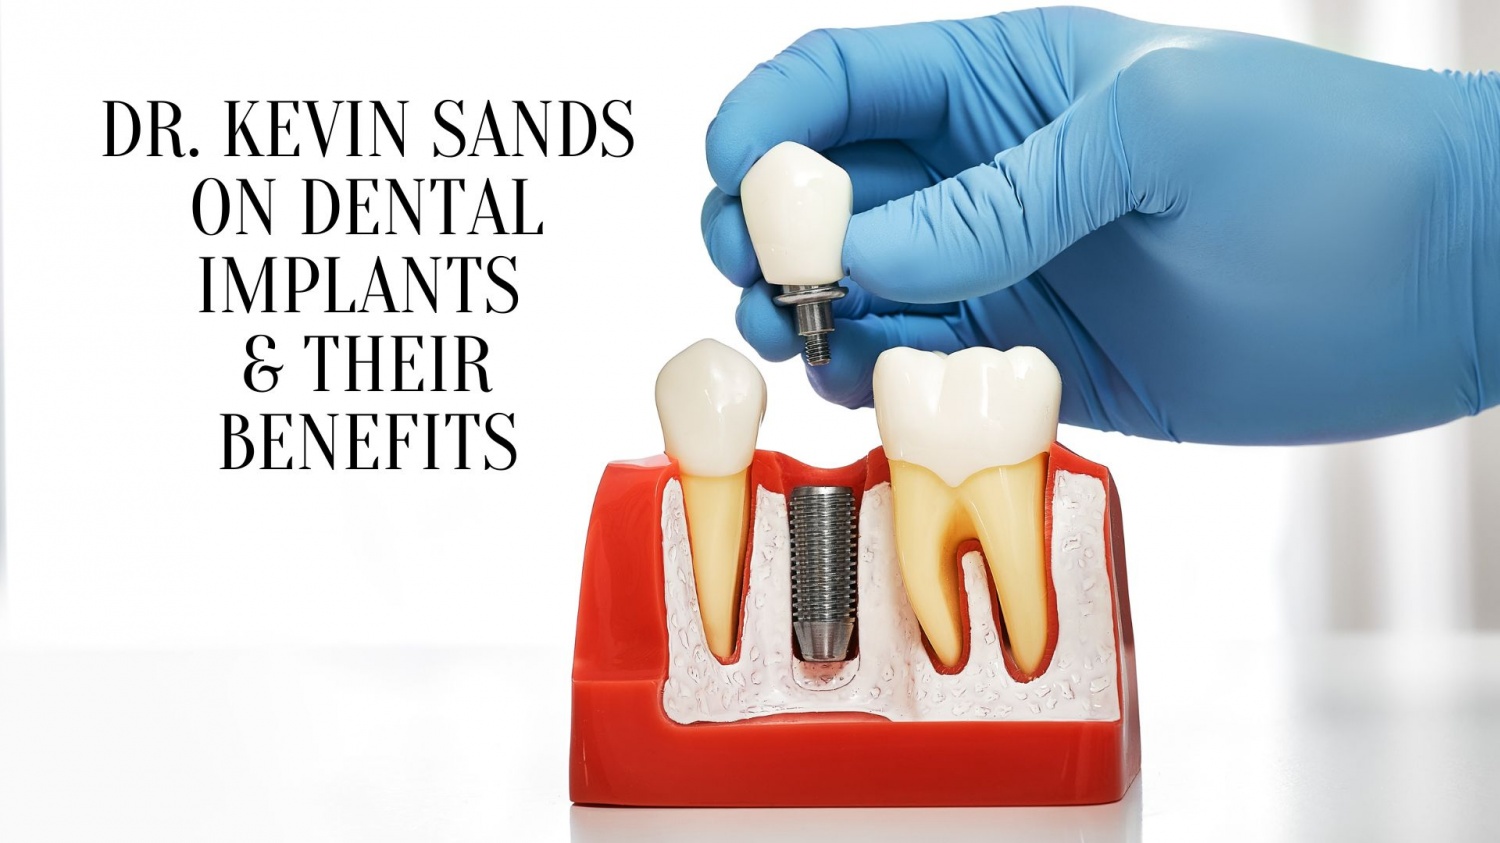 Dr. Kevin Sands on Dental Implants & Their Benefits